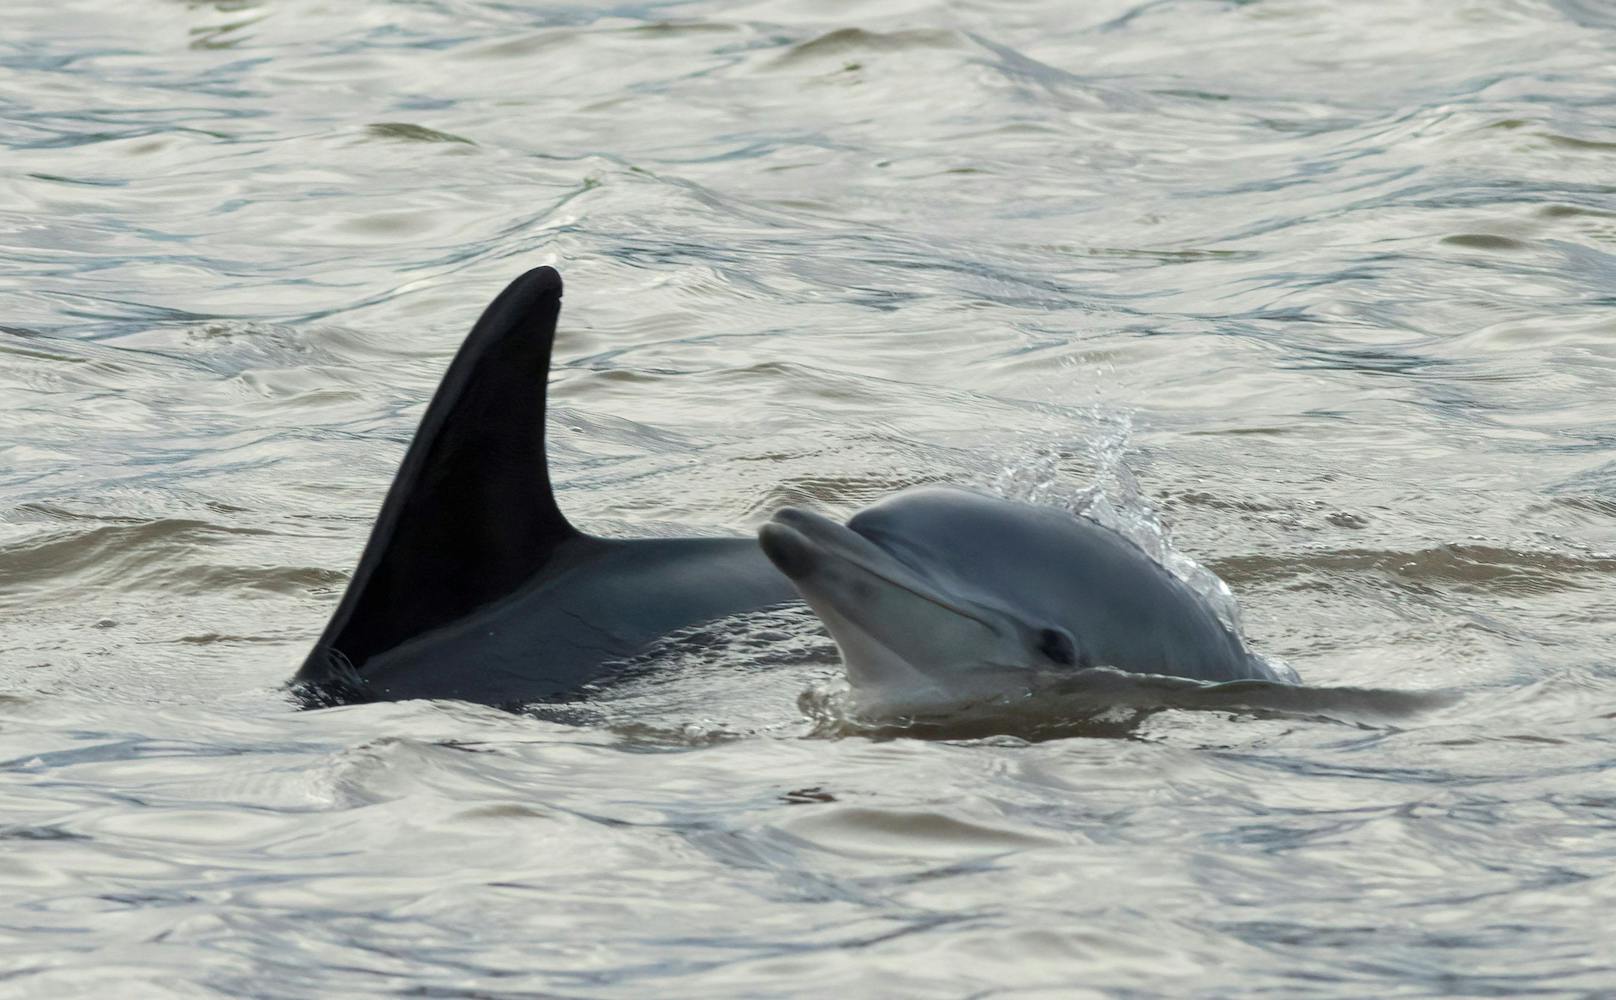 Sie schwammen mit Delfinen – nun droht ihnen Gefängnis